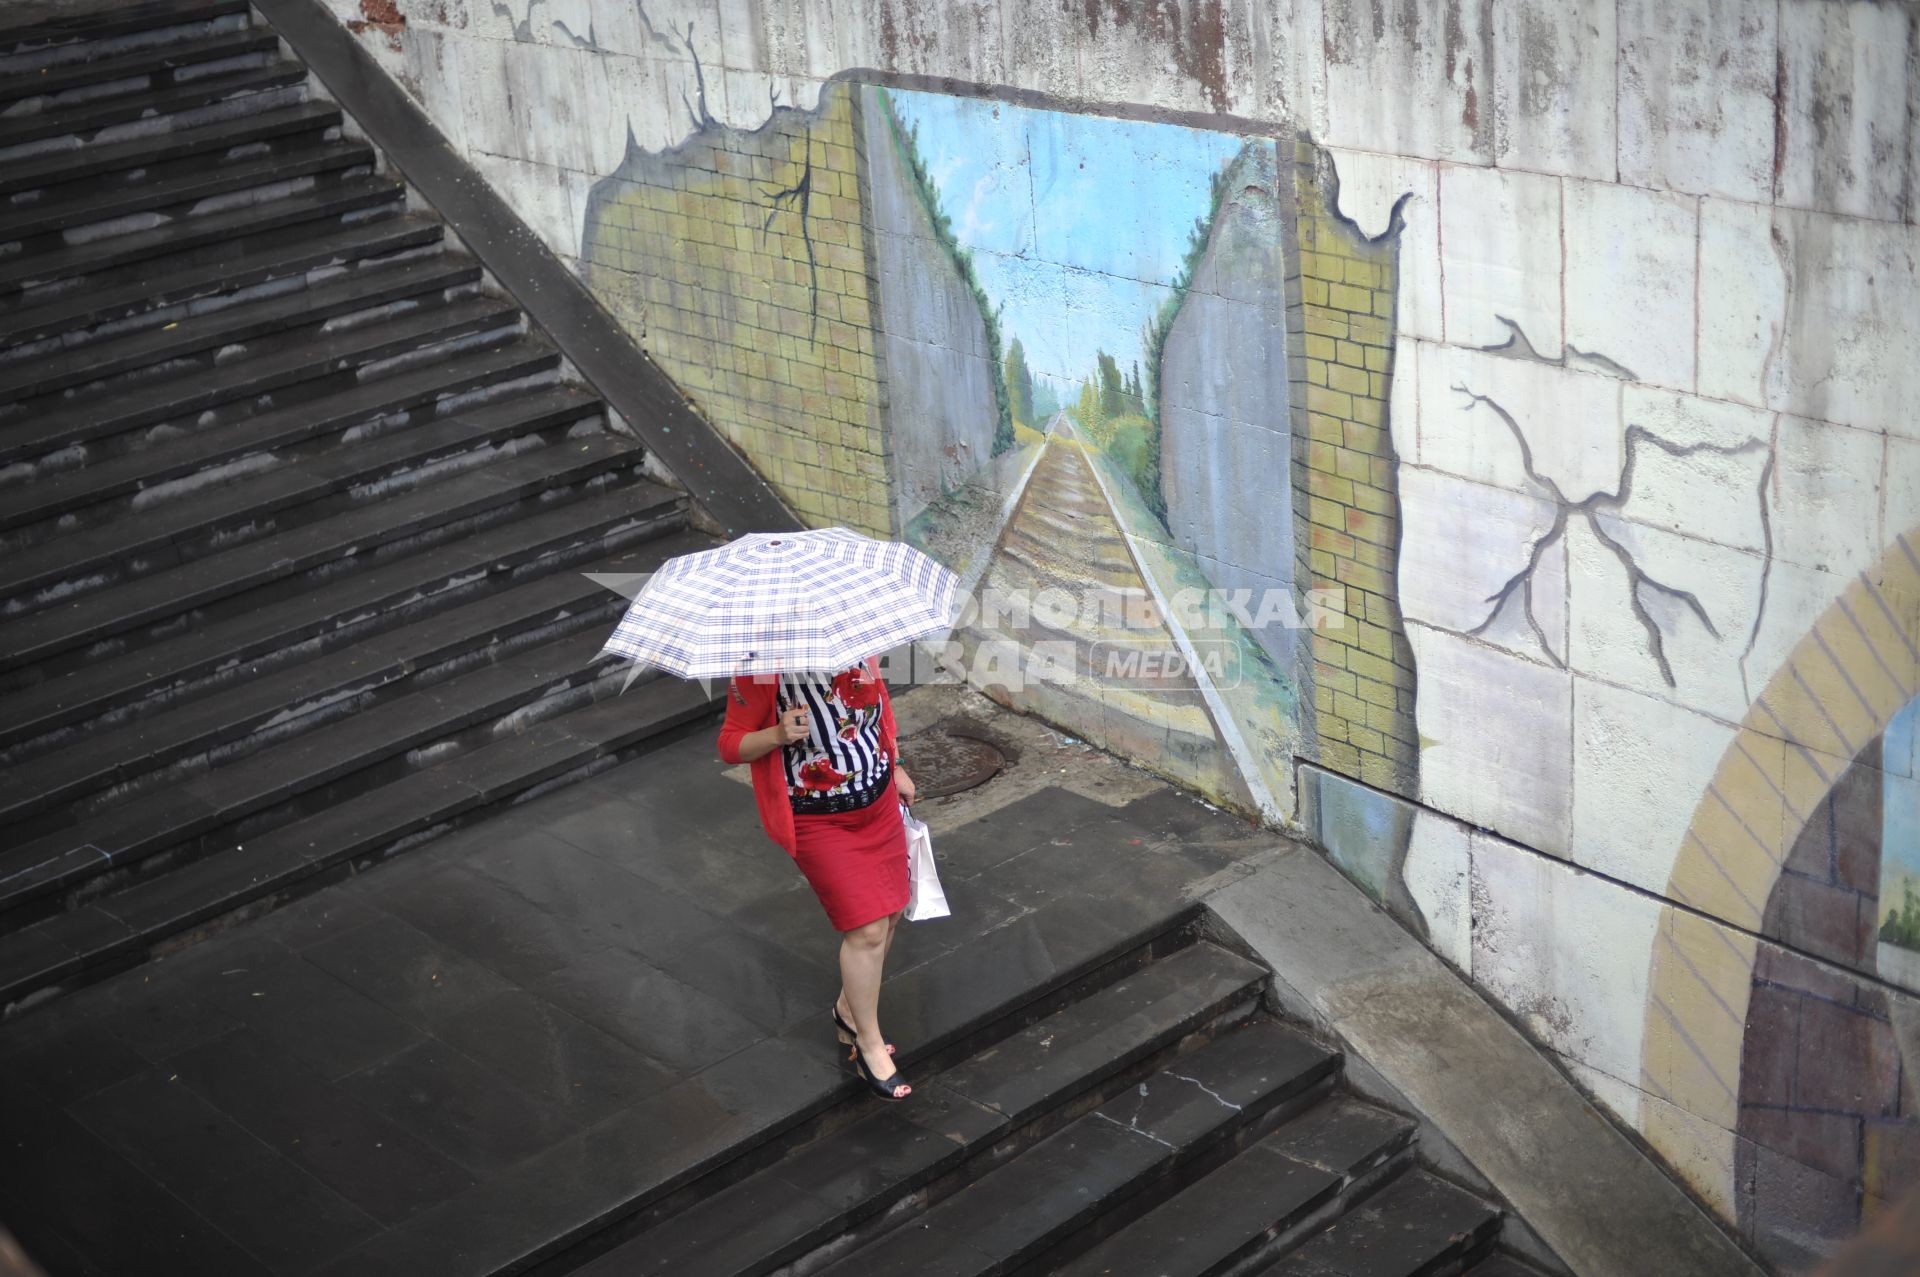 Армения, Ереван. Женщина под зонтом спускается по лестнице.